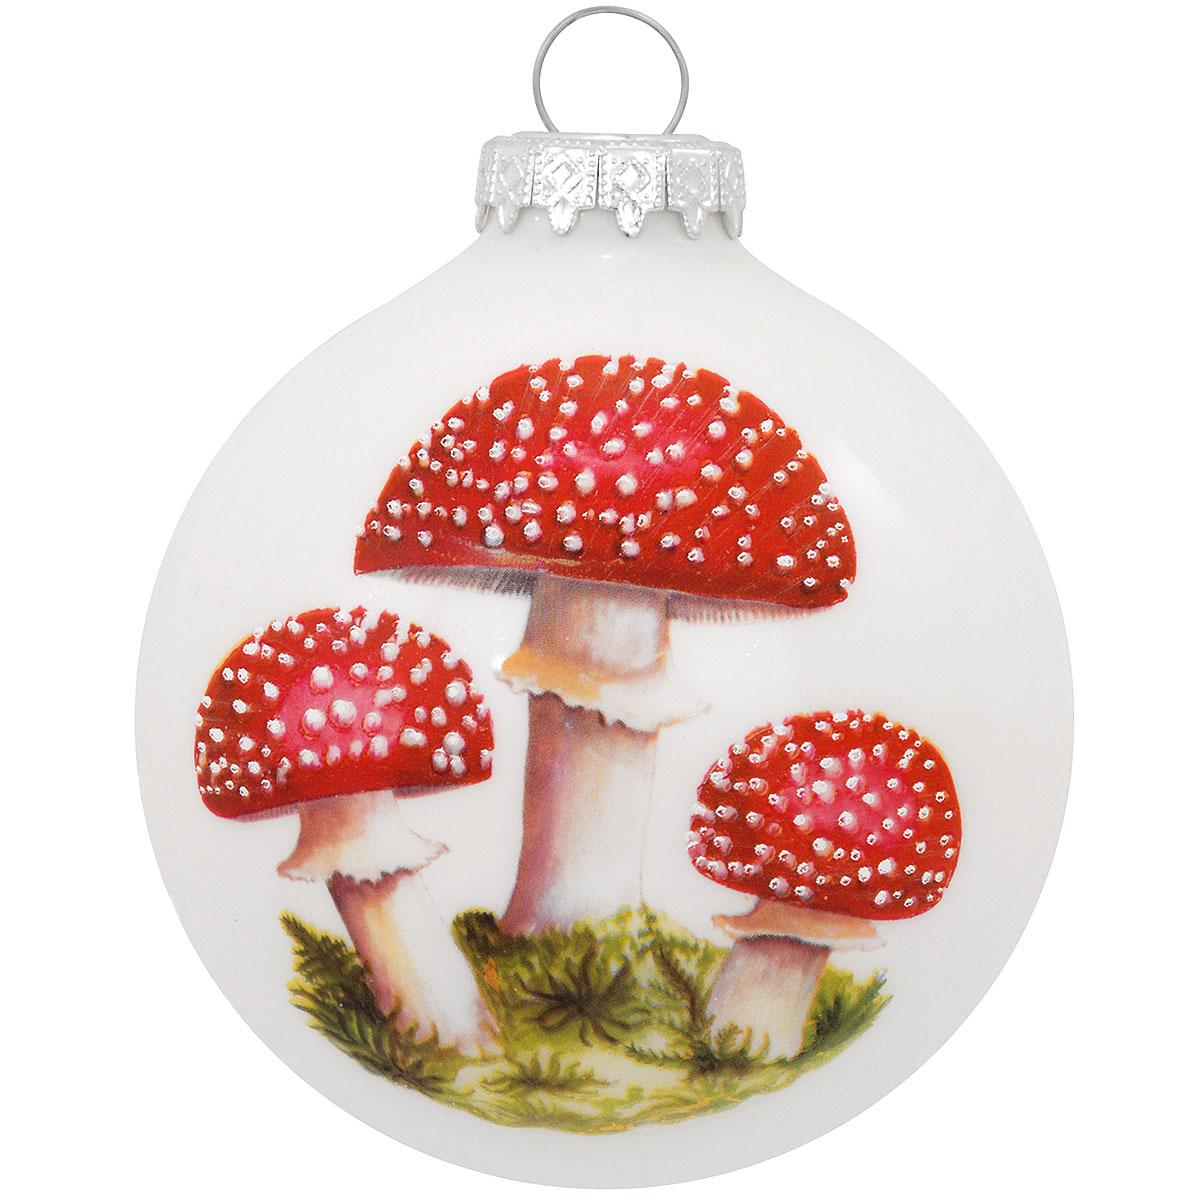 Mushroom Symbol Glass Ornament